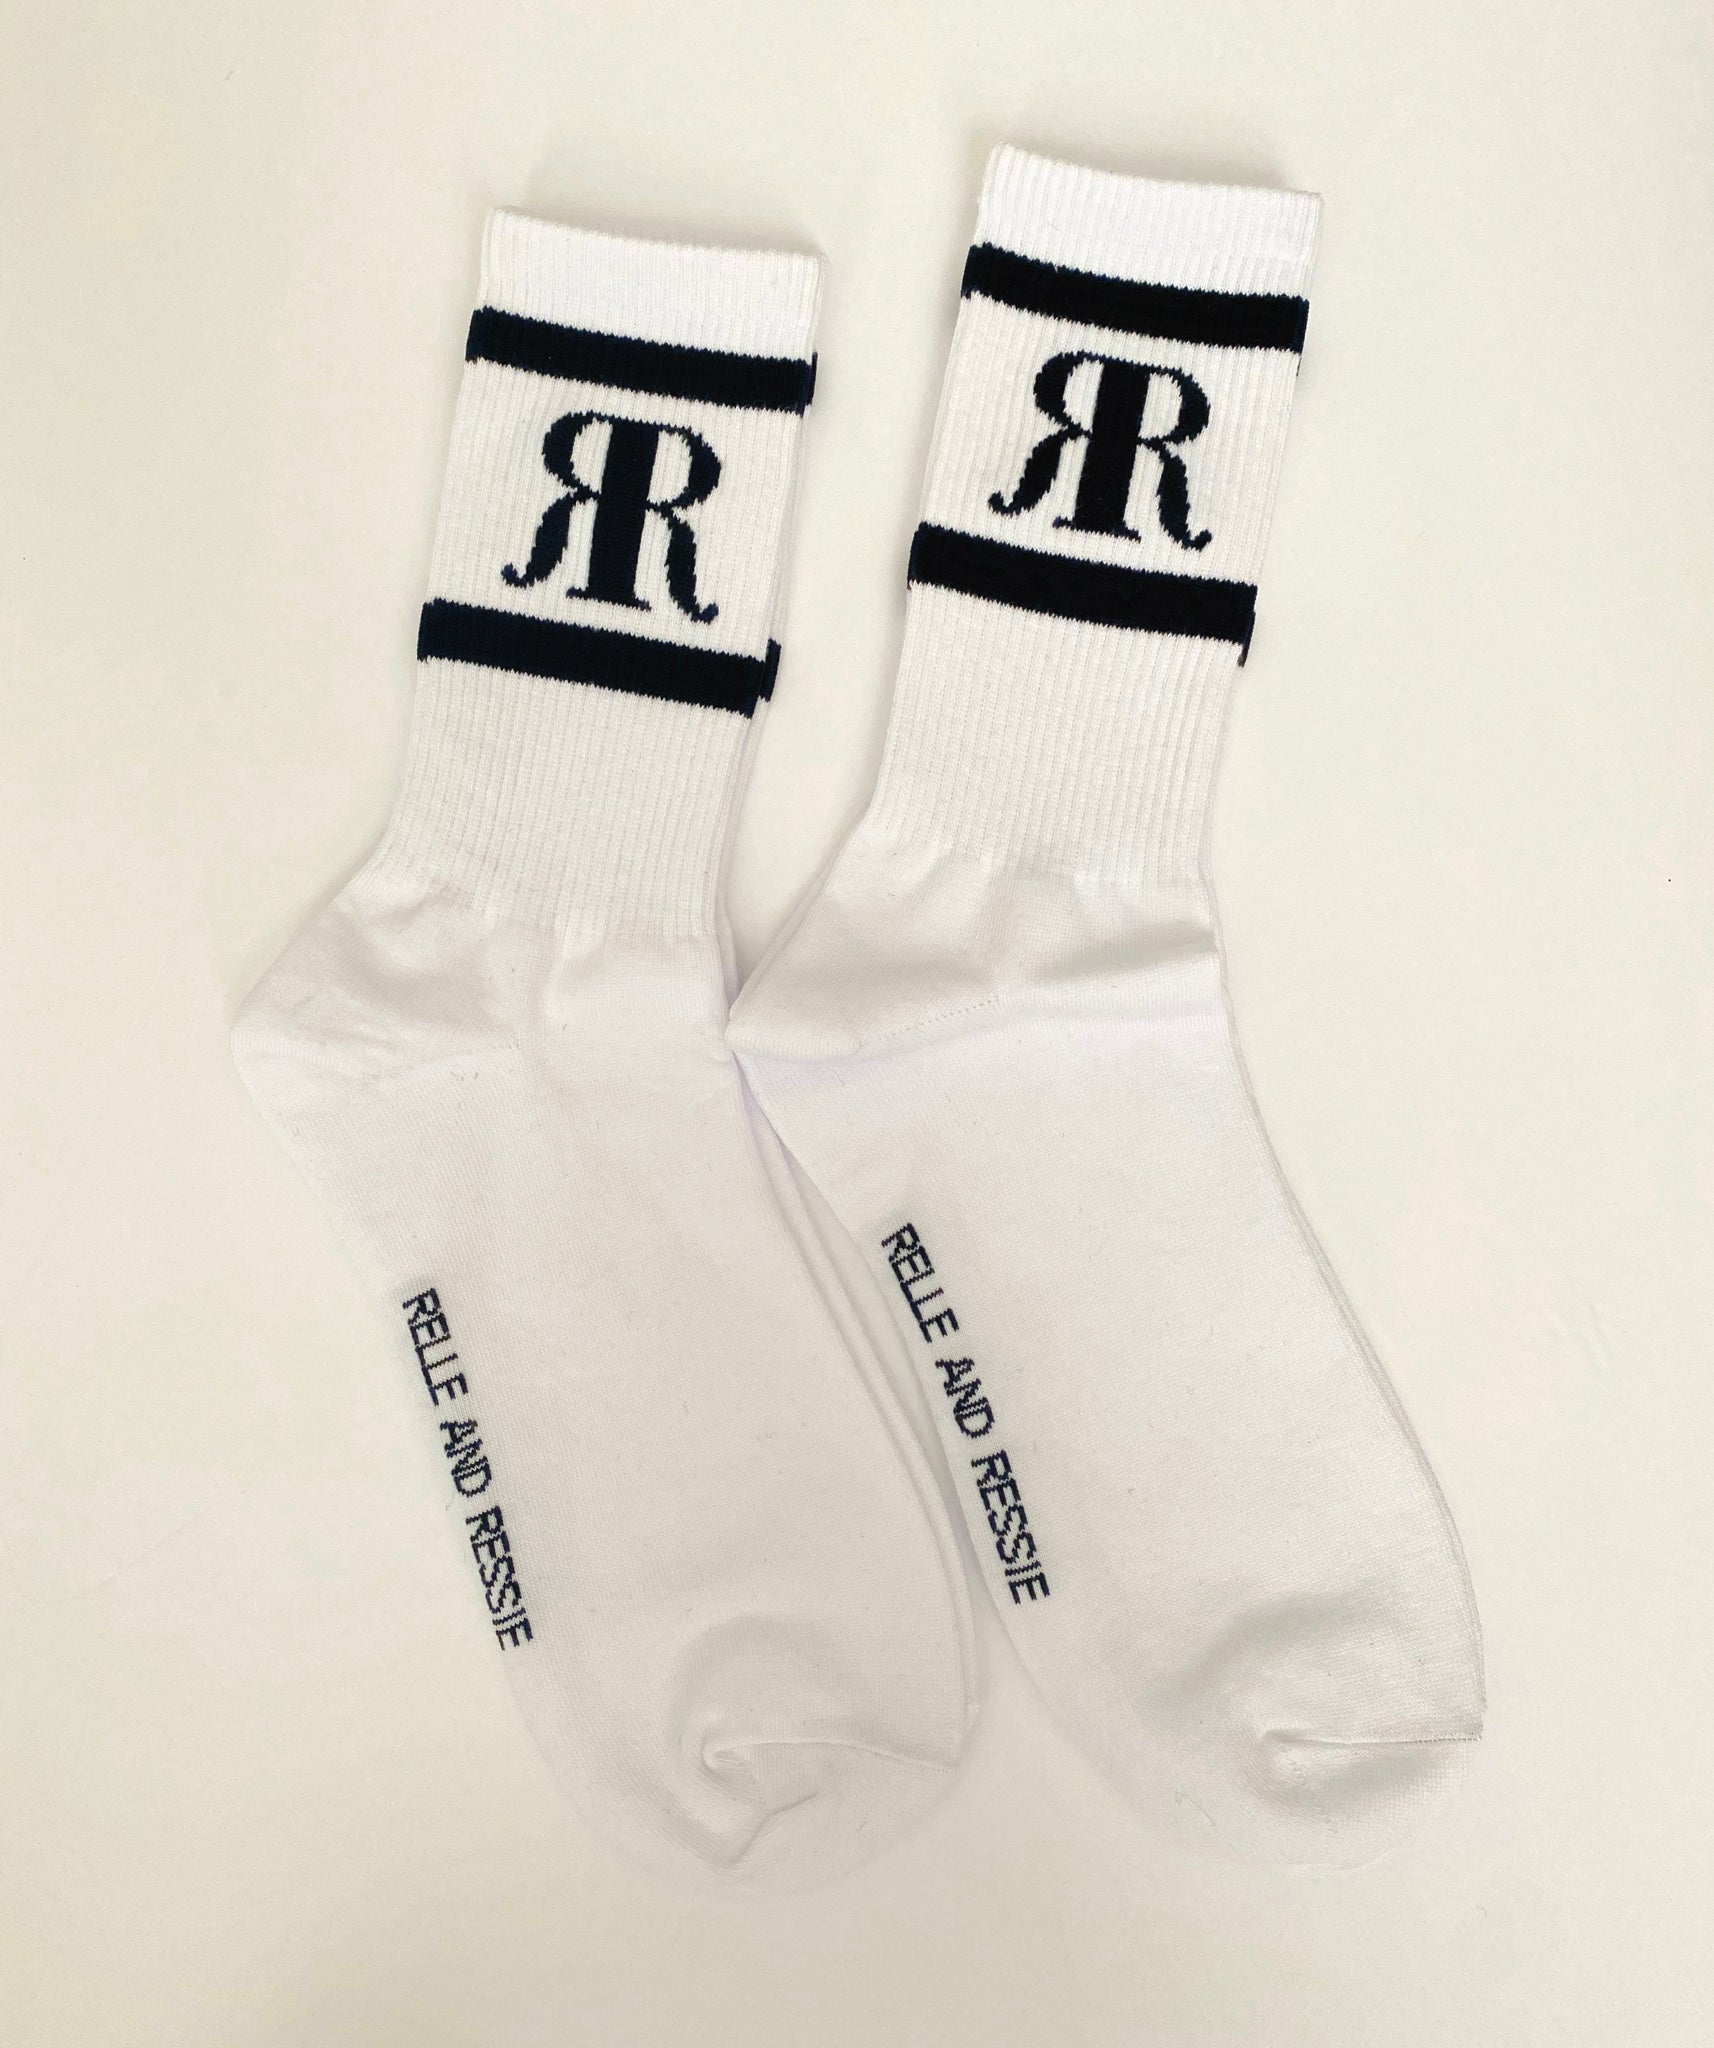 RR Socks — Rebel Rebel